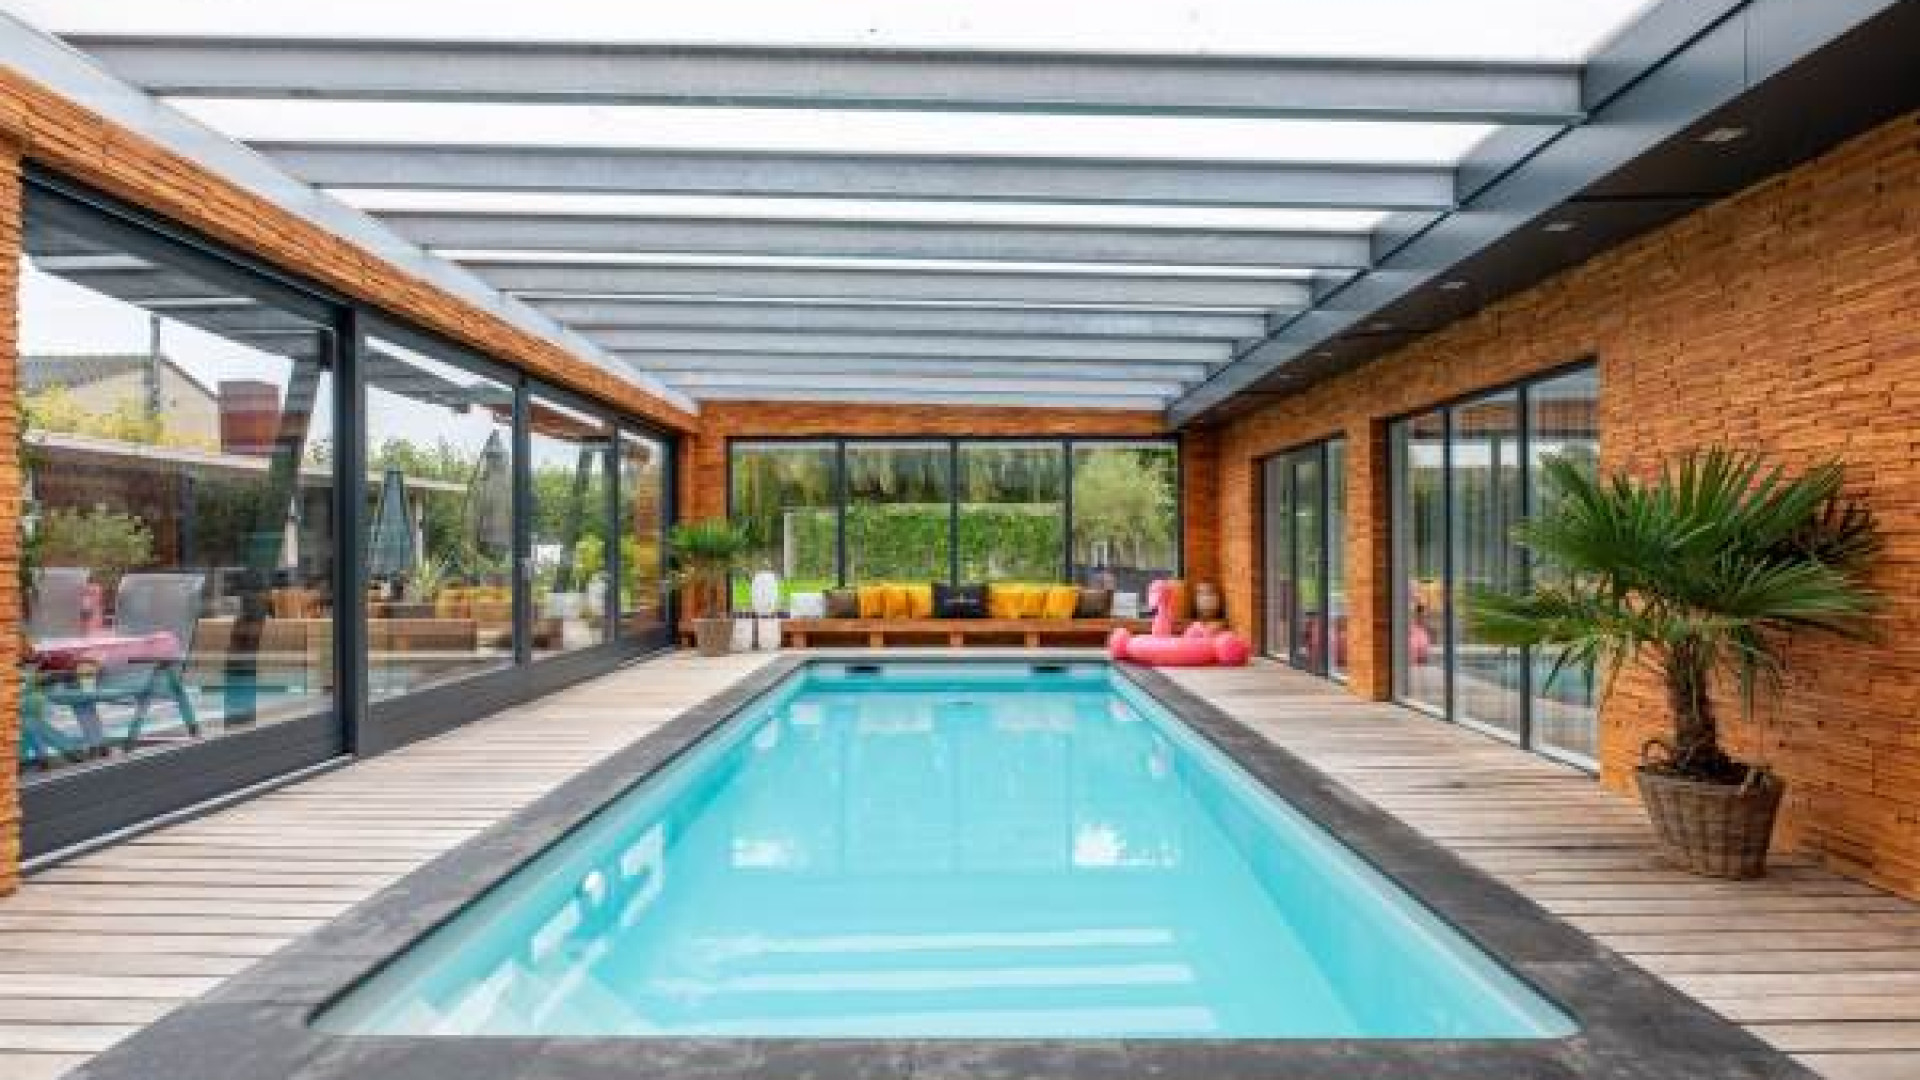 Influencer Royalistiq koopt miljoenenvilla met zwembad en bioscoopzaal. Zie foto's